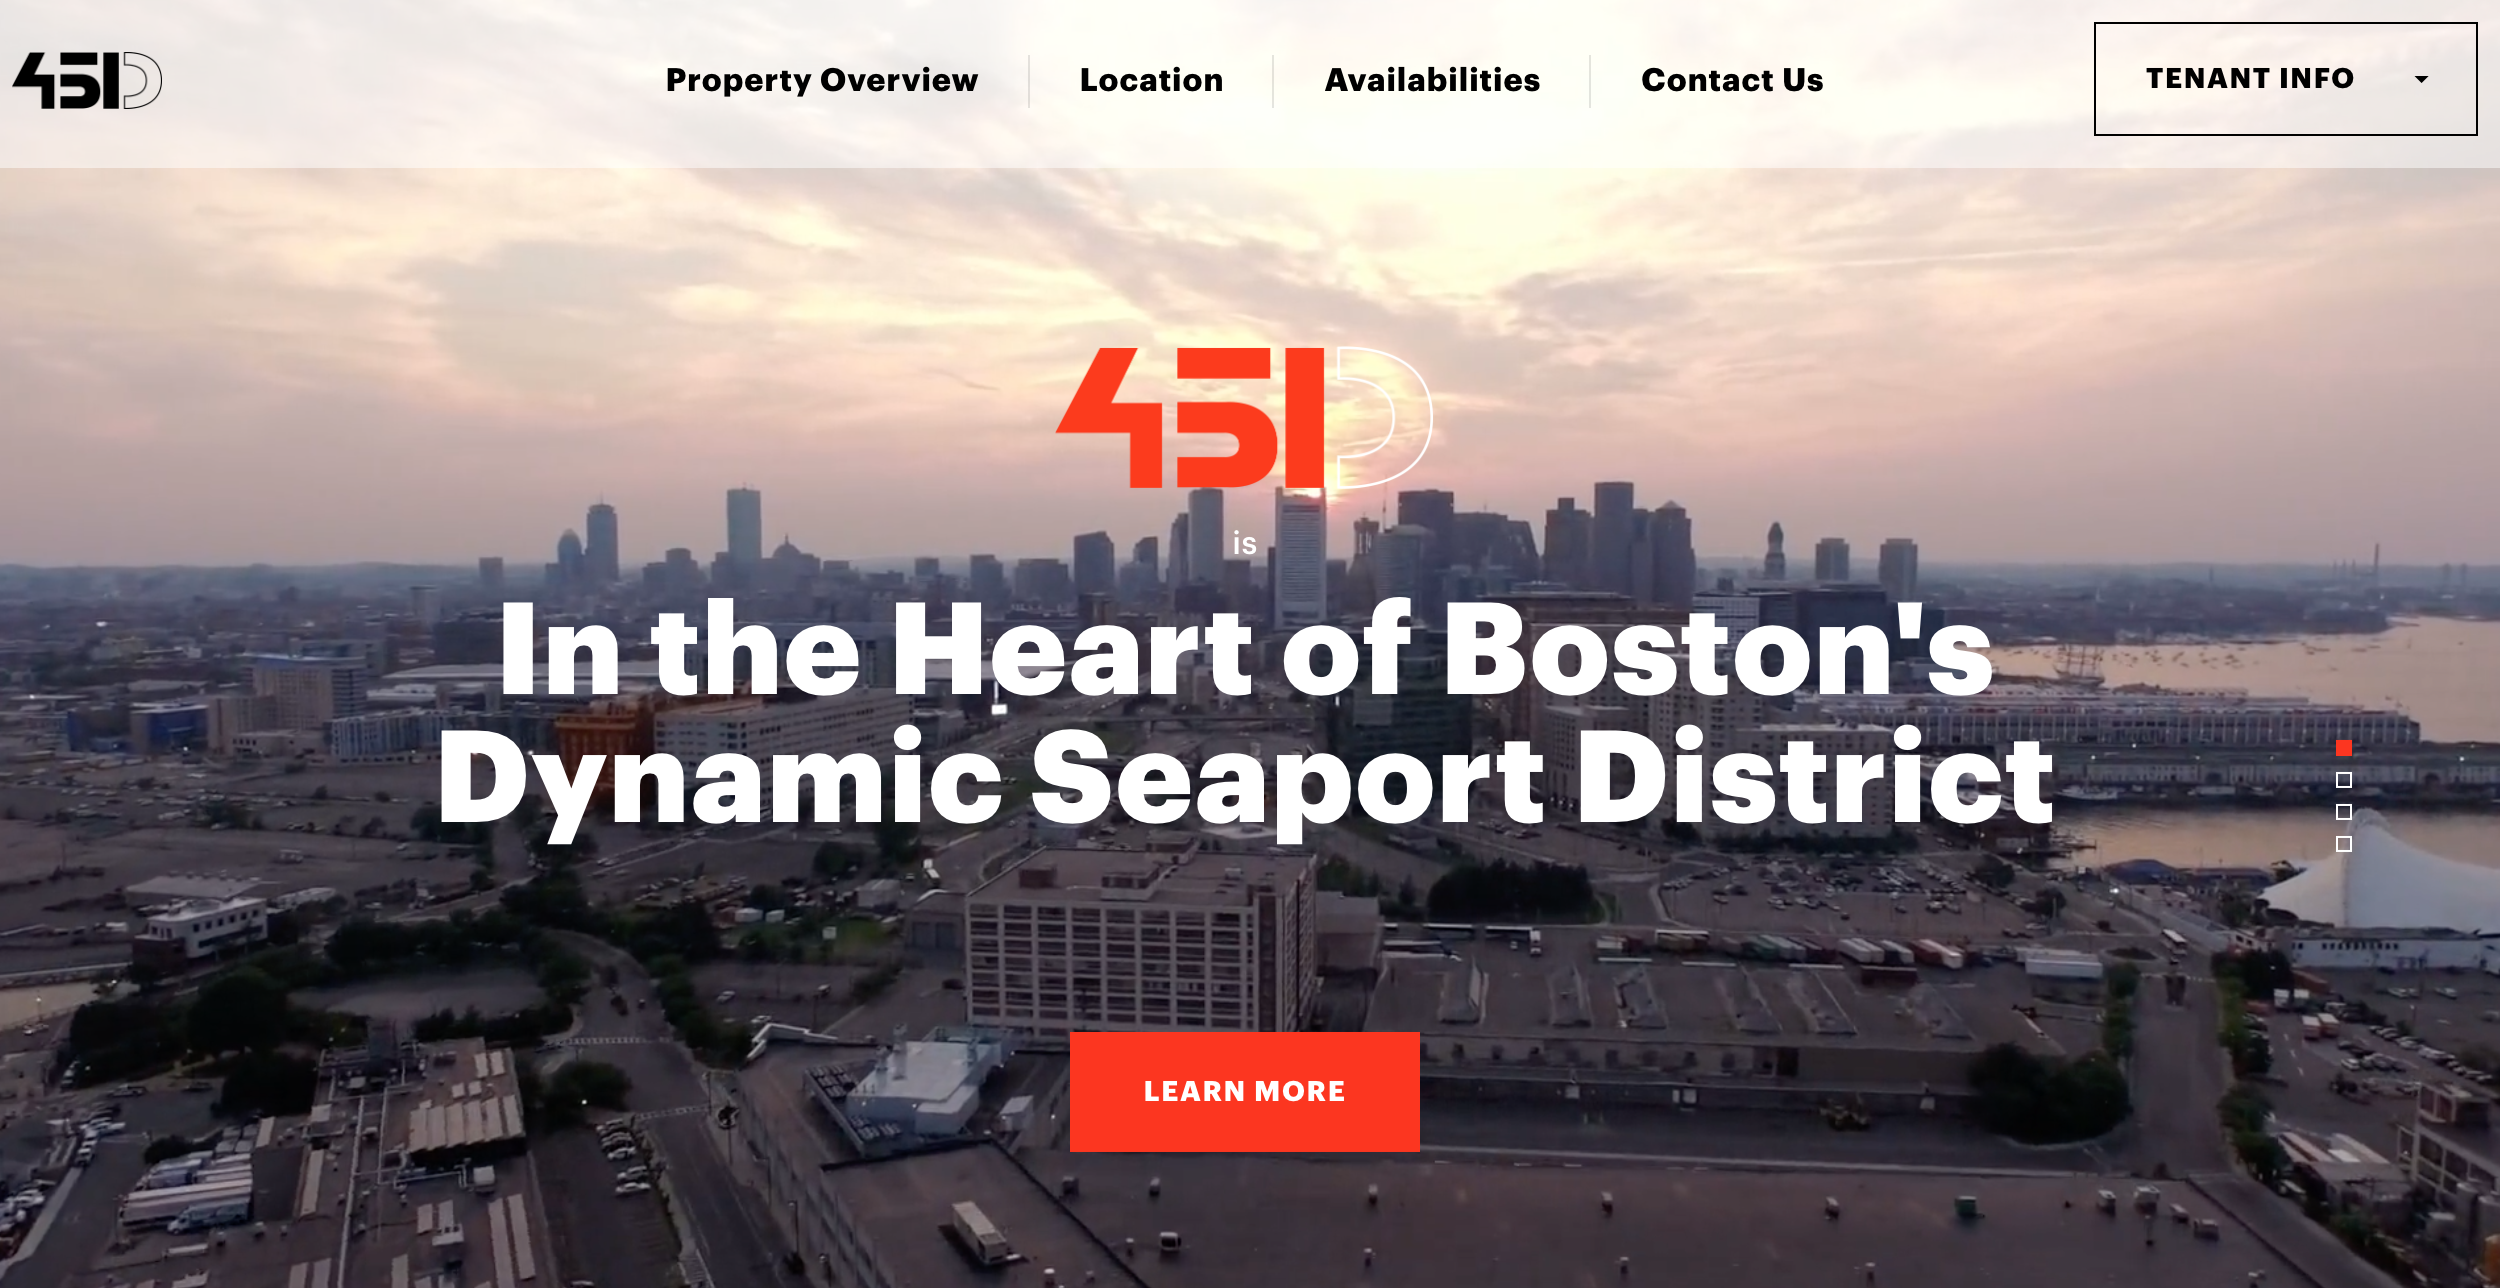 451 D St - Best Real Estate Property Website Designs